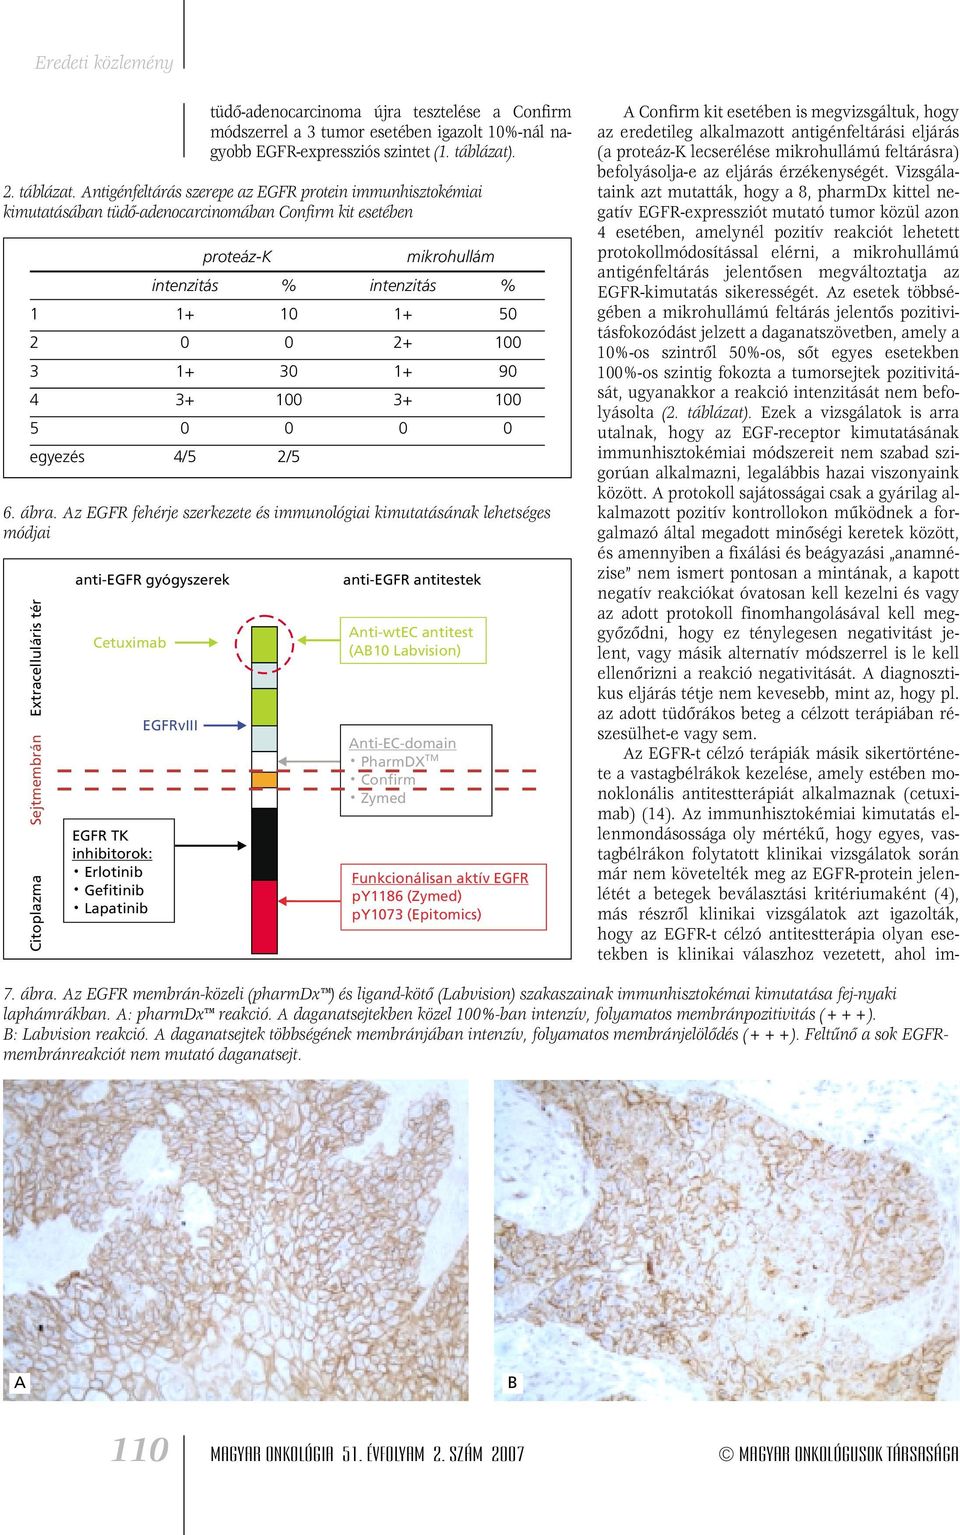 Antigénfeltárás szerepe az EGFR protein immunhisztokémiai kimutatásában tüdô-adenocarcinomában Confirm kit esetében proteáz-k mikrohullám intenzitás % intenzitás % 1 1+ 10 1+ 50 2 0 0 2+ 100 3 1+ 30